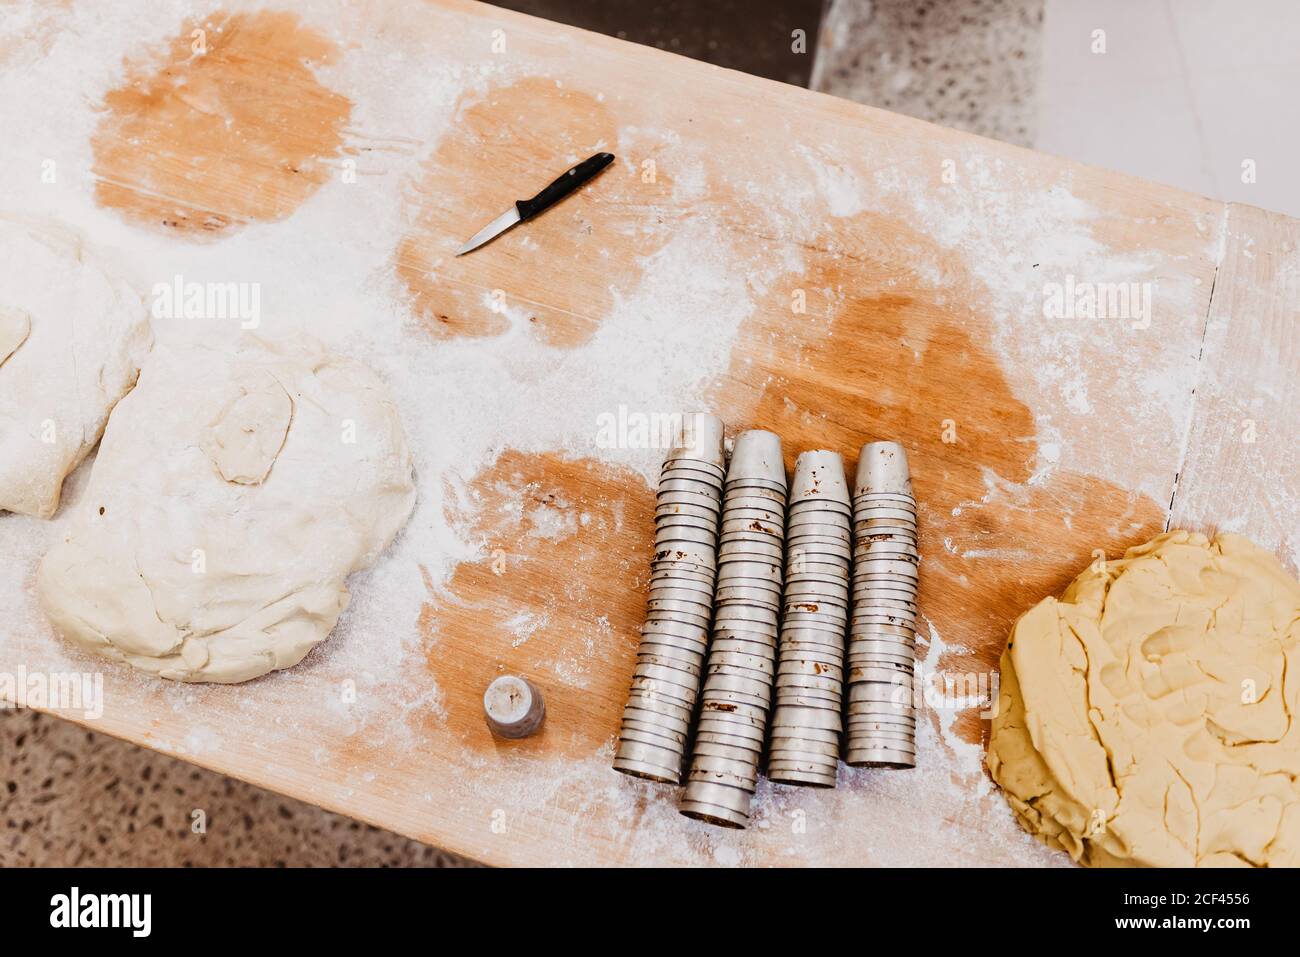 Von oben kleines Messer und Satz von Tassen auf gelegt Bemehlter Tisch in der Bäckerei Stockfoto